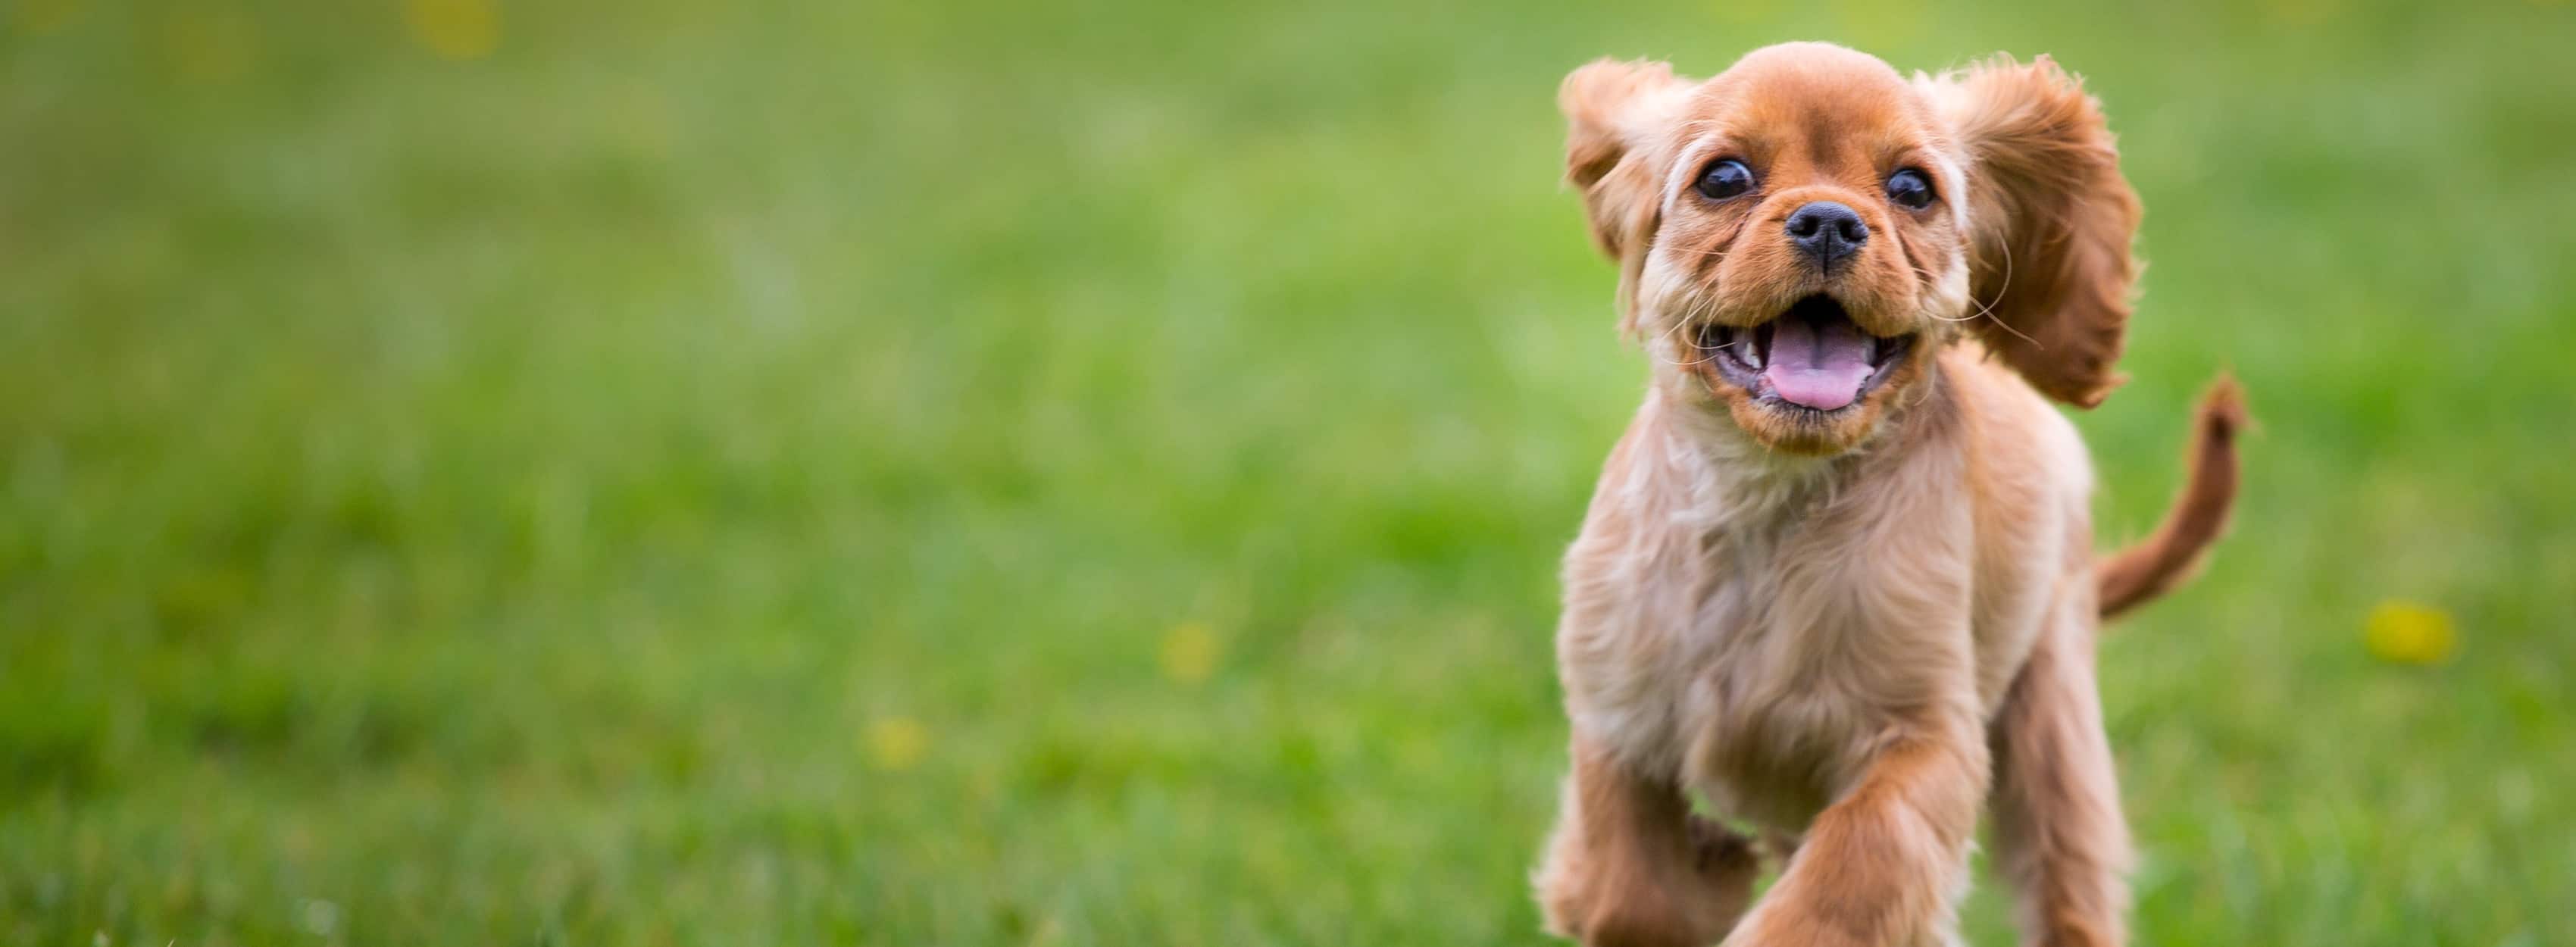 Small brown dog running through a grass field.